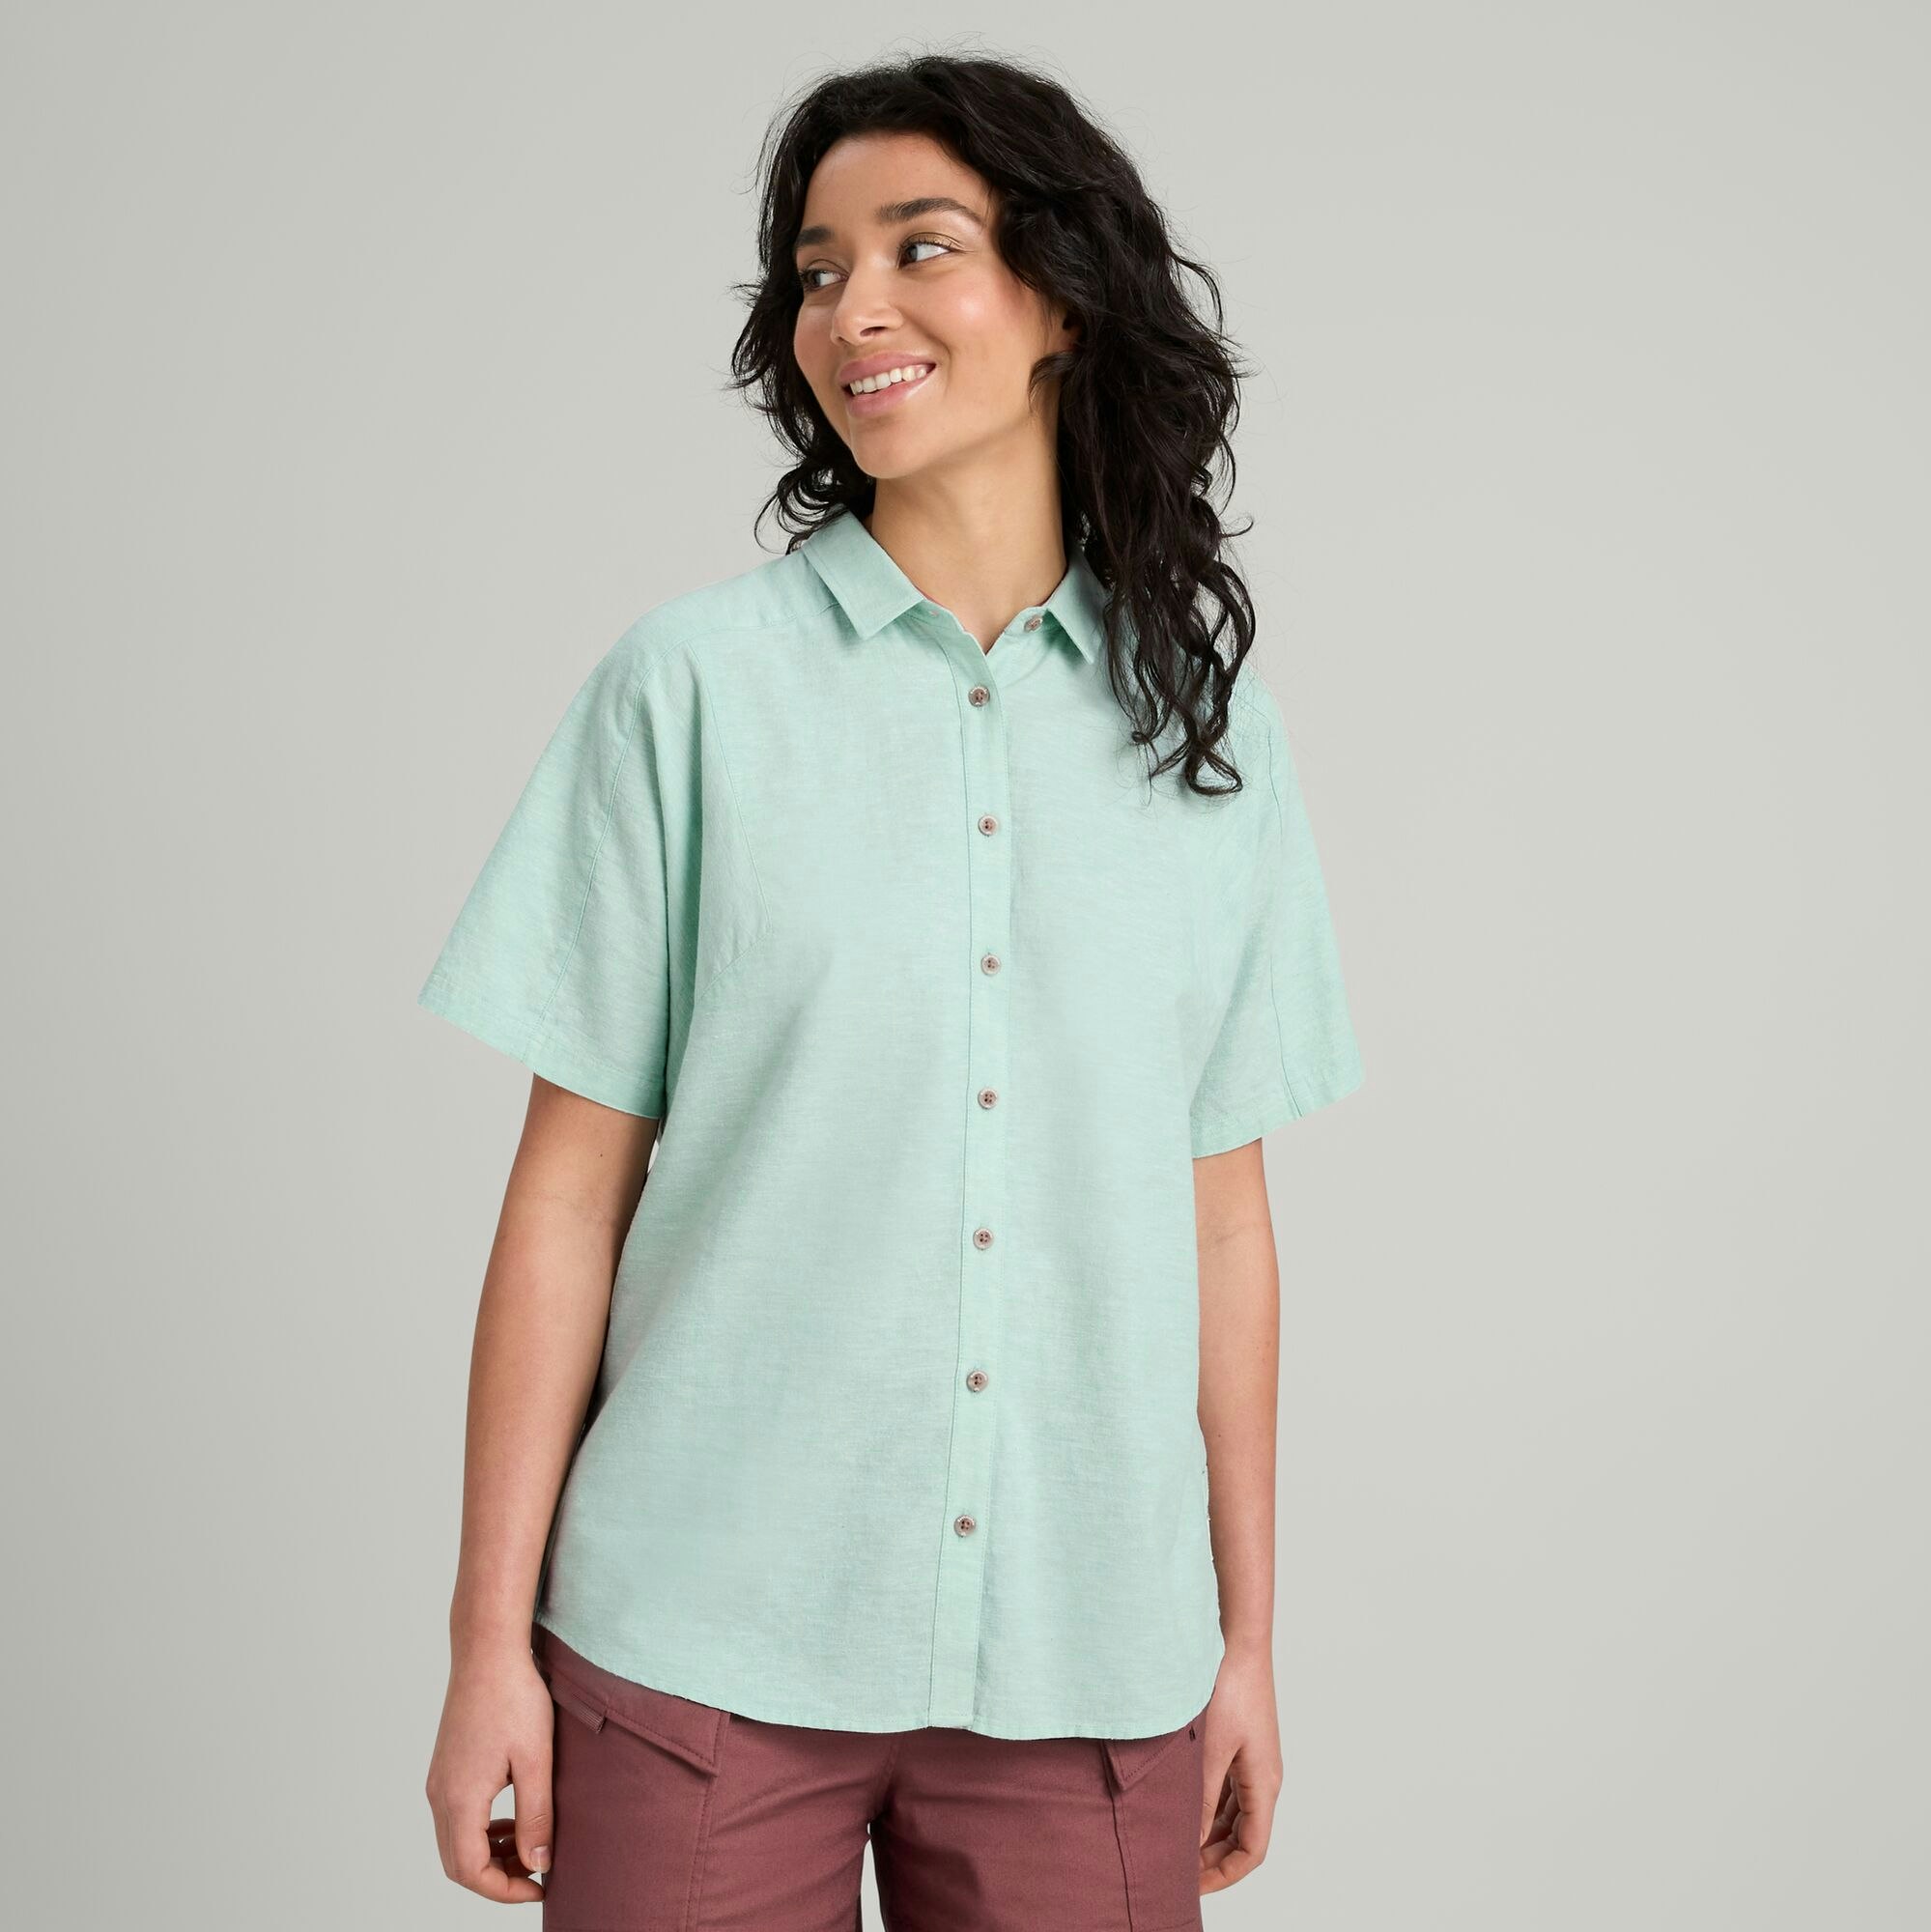 Flaxton Women's Short Sleeve Shirt